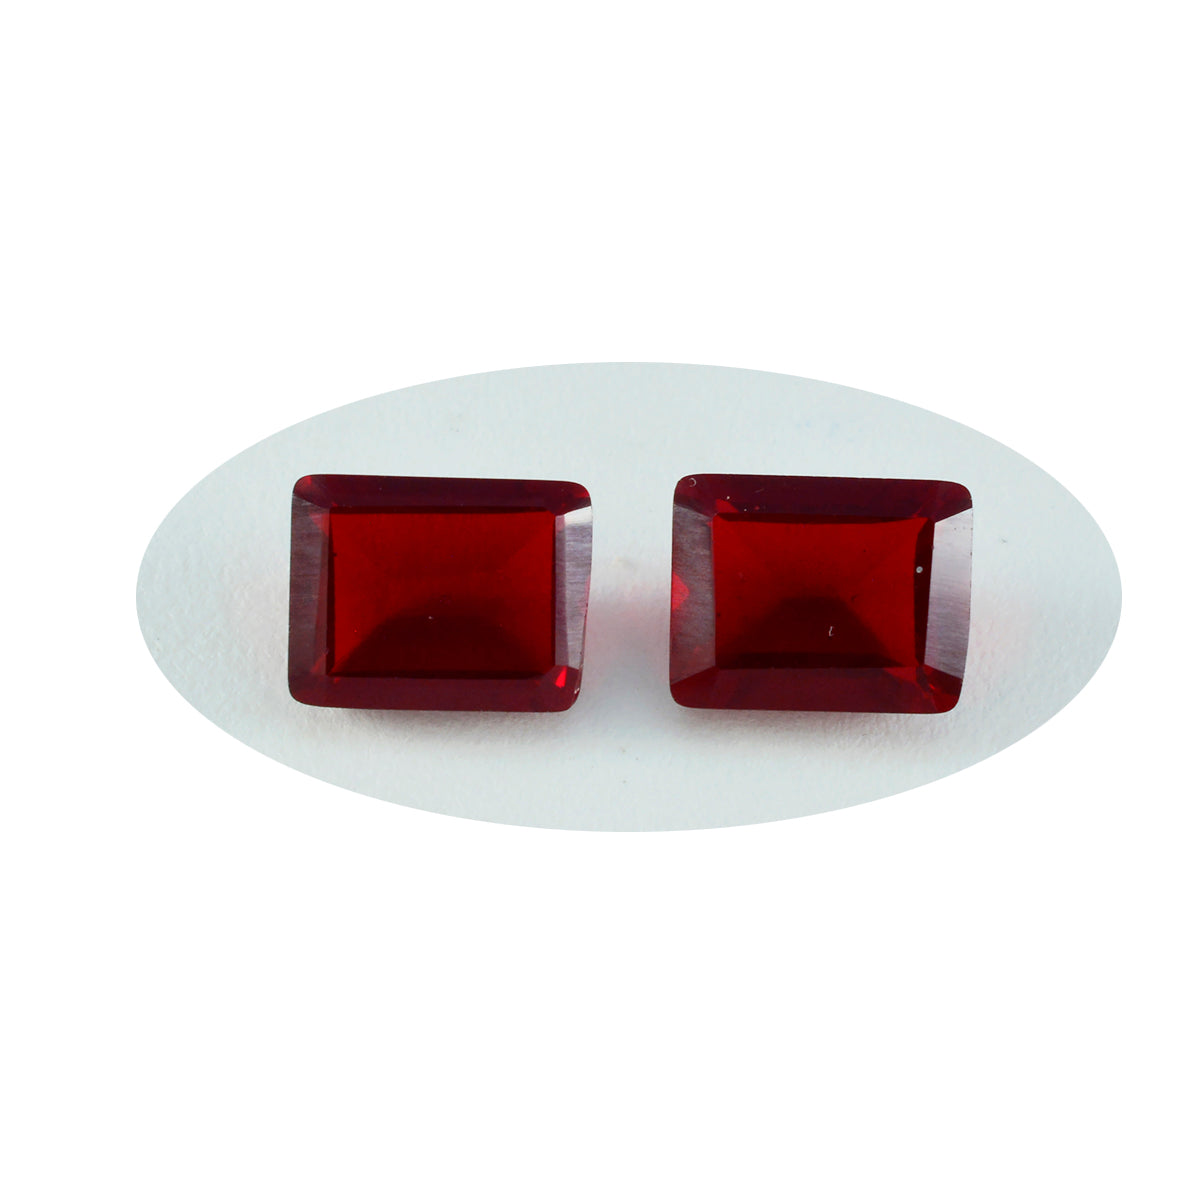 riyogems 1 шт. красный рубин cz ограненный 12x16 мм восьмиугольная форма отличное качество свободный драгоценный камень